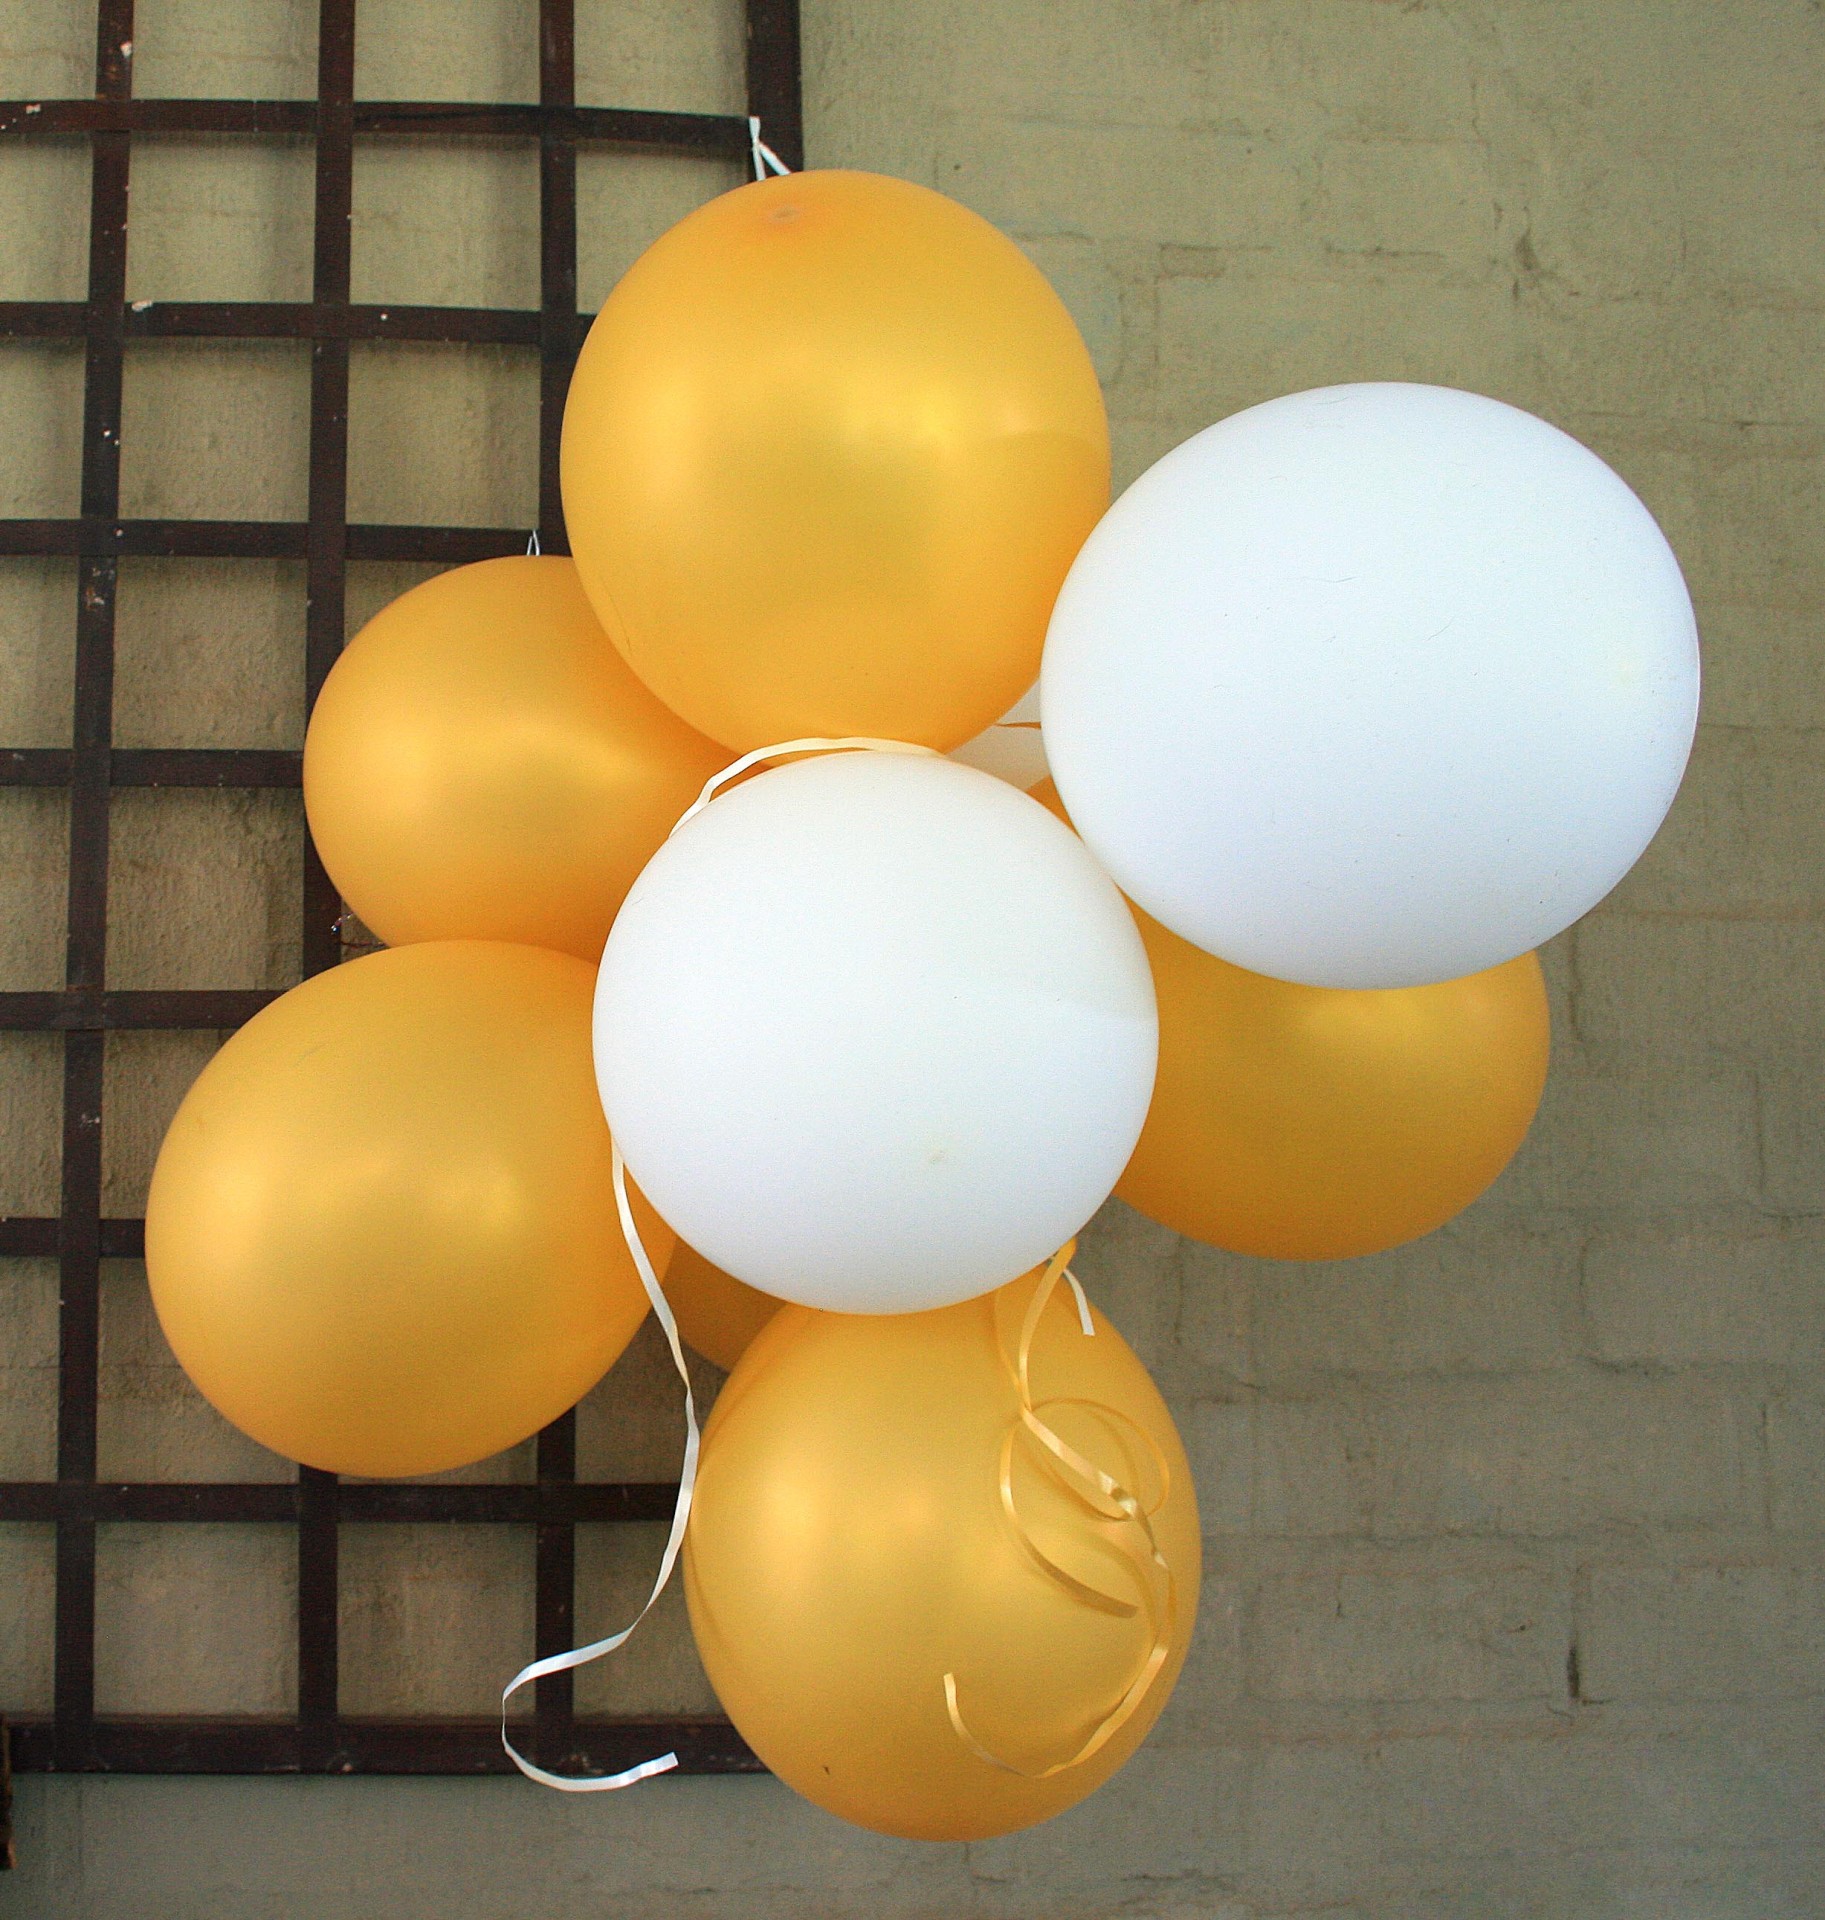 balloons yellow white free photo